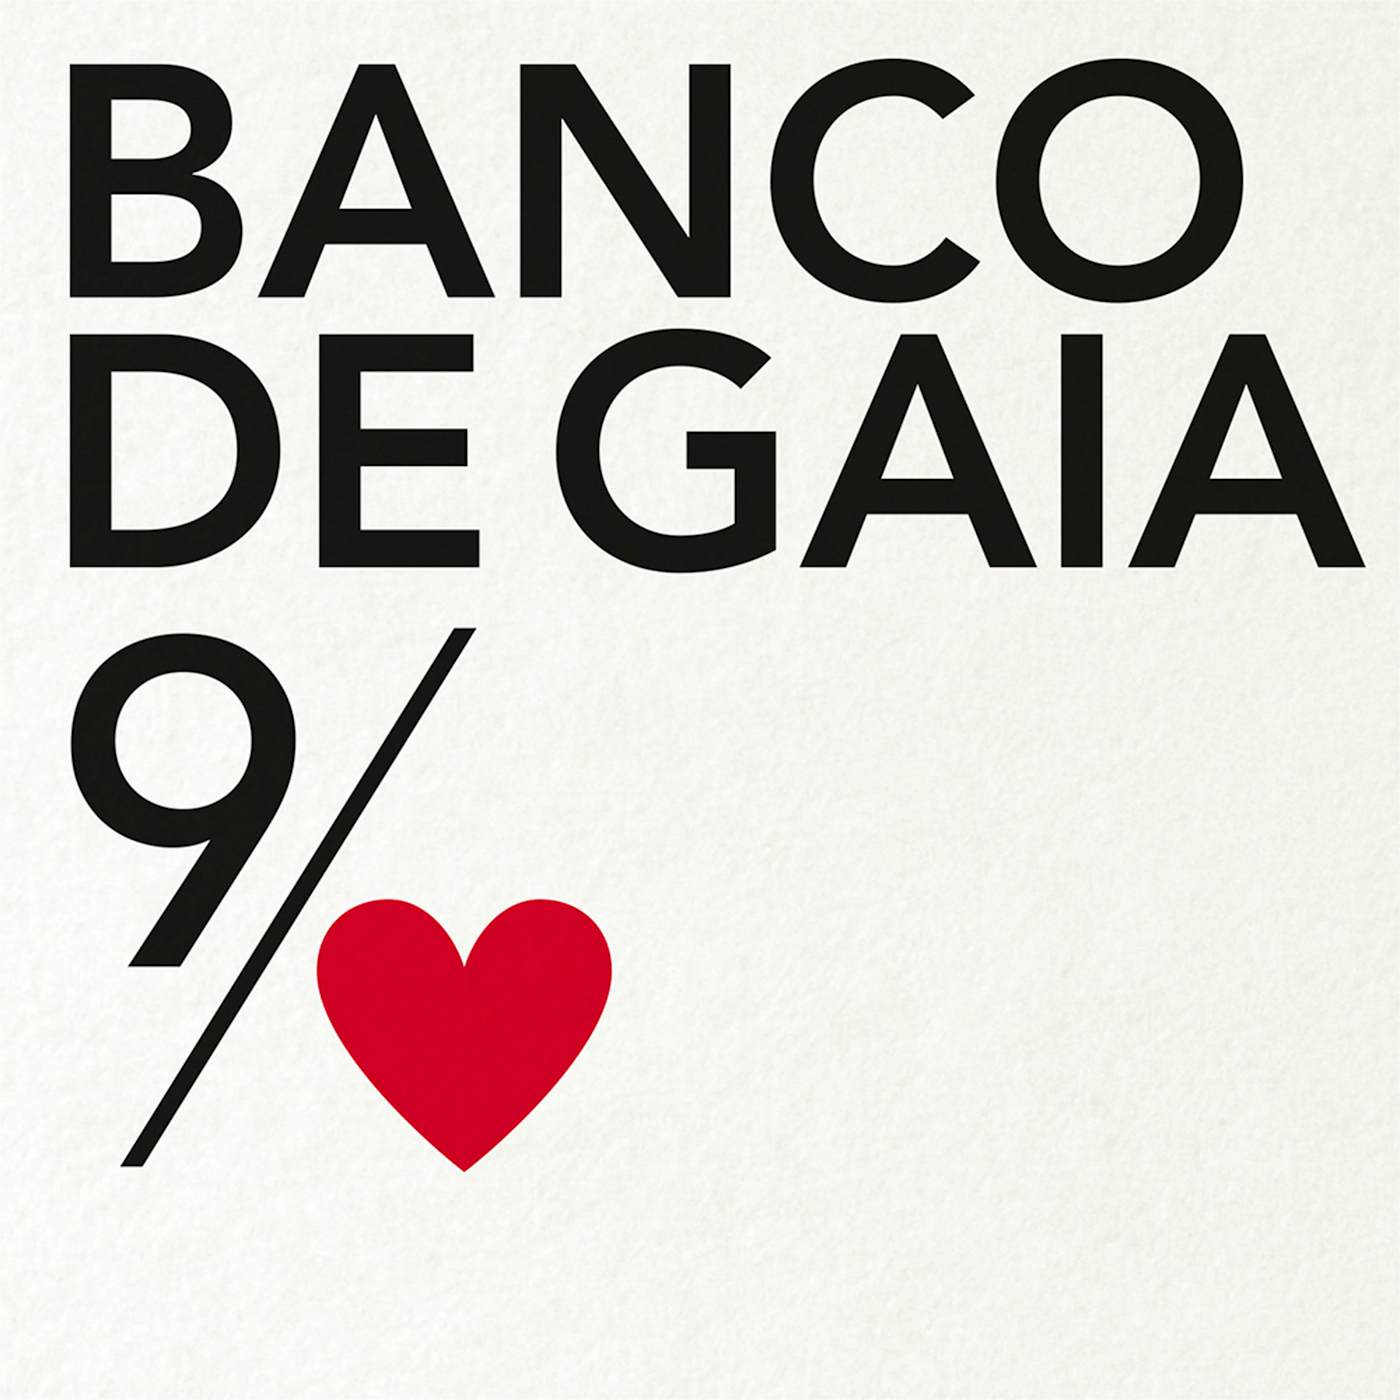 Banco De Gaia 9 Th Of Nine Hearts Vinyl Record